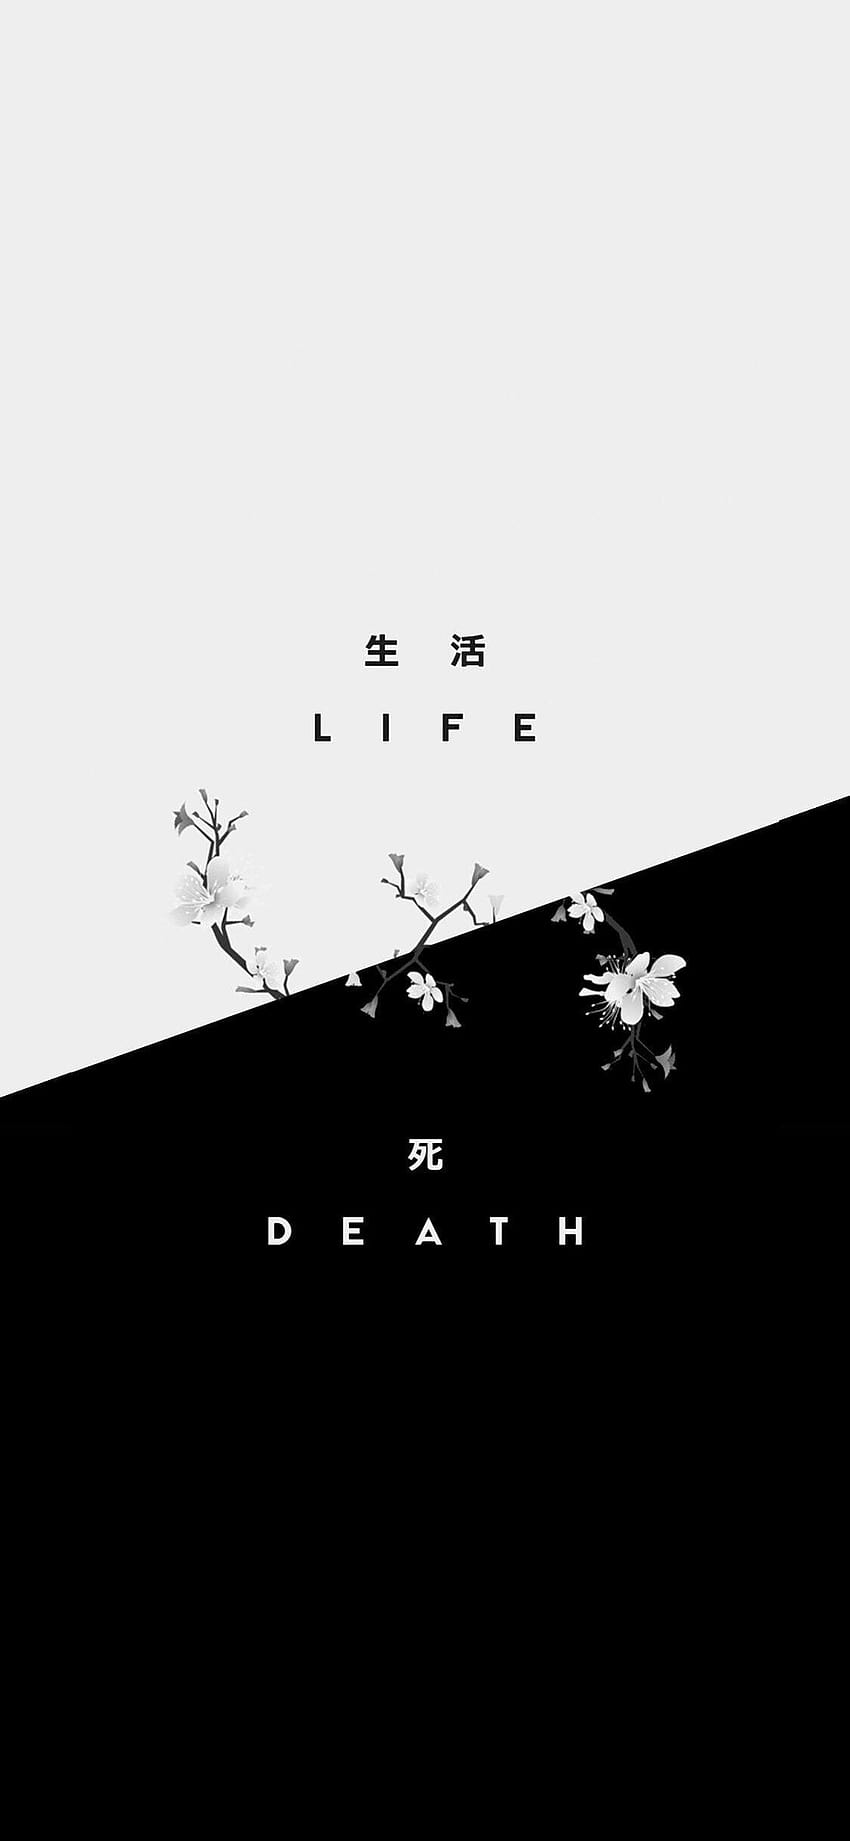 Life // Death, get a life HD phone wallpaper